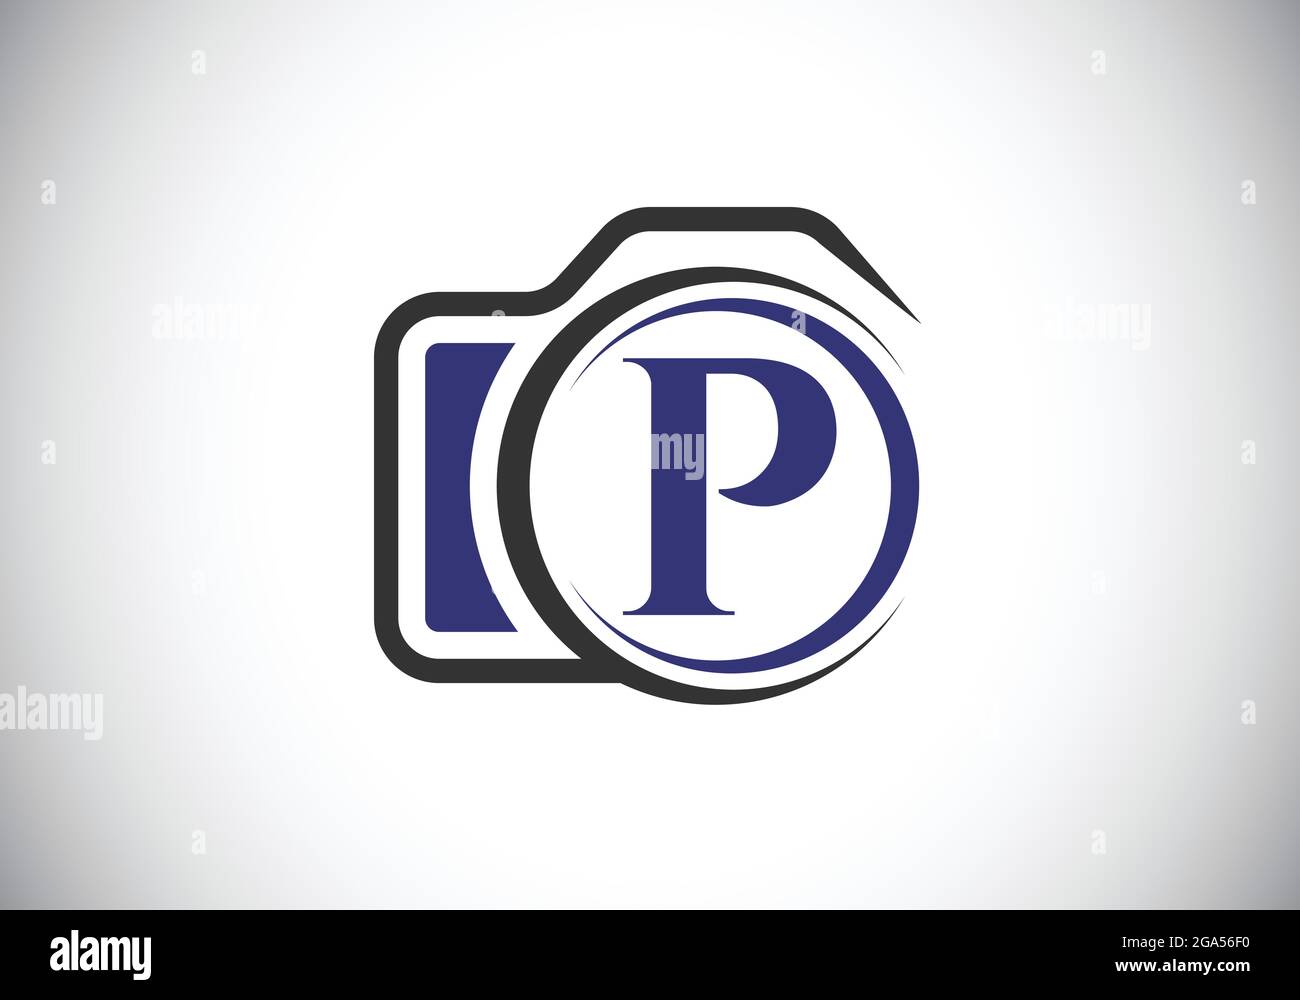 Lettera iniziale del monogramma P con l'icona di una telecamera. Immagine vettoriale del logo fotografico. Design moderno del logo per il settore della fotografia e l'azienda Illustrazione Vettoriale